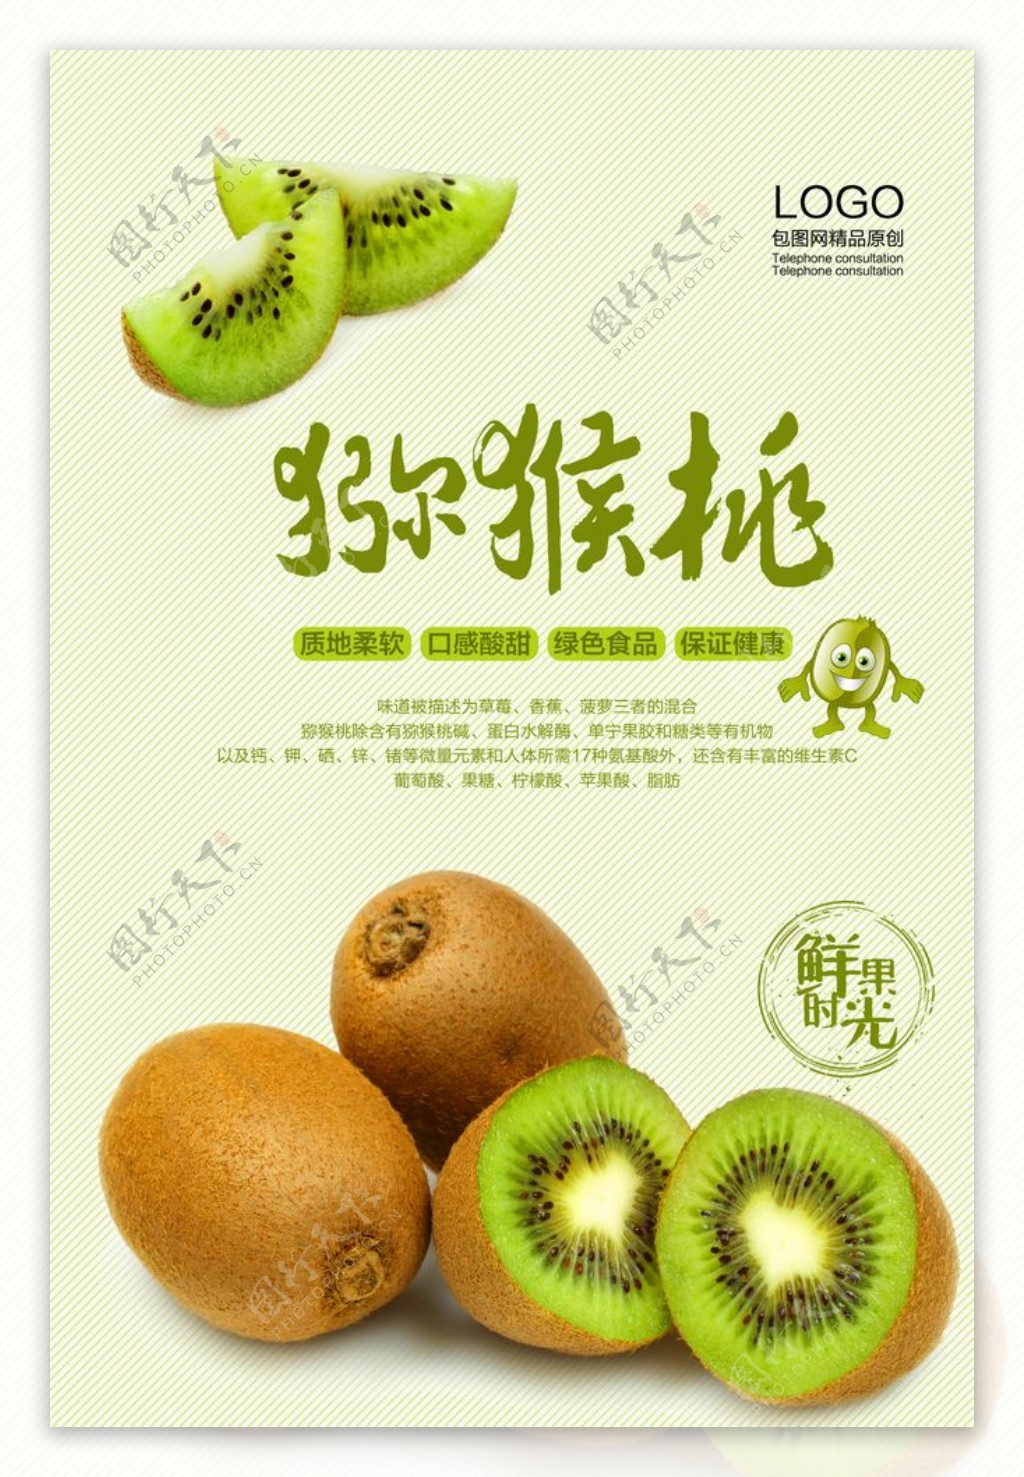 绿色水果猕猴桃海报